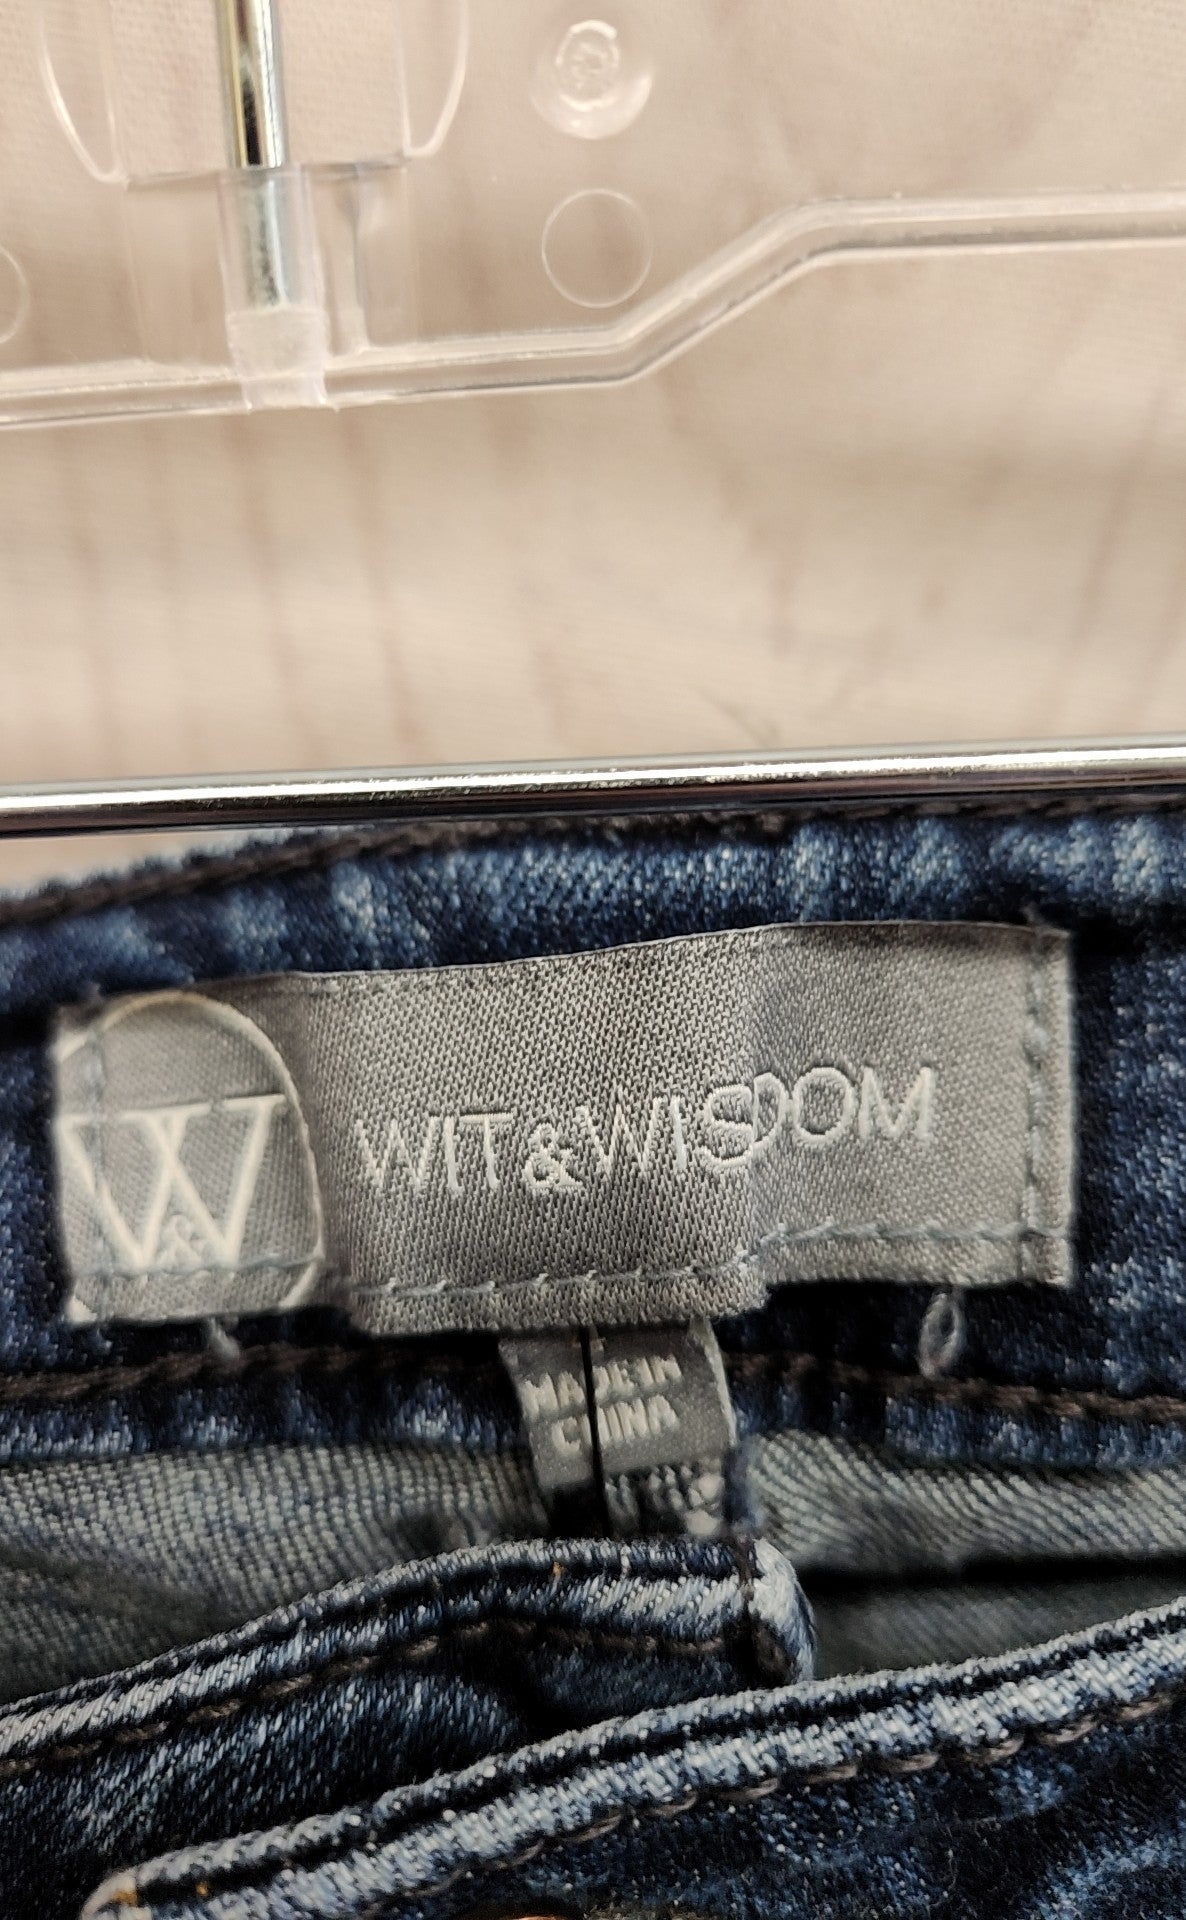 Wit & Wisdom Women's Size 27 (3-4) Blue Jeans